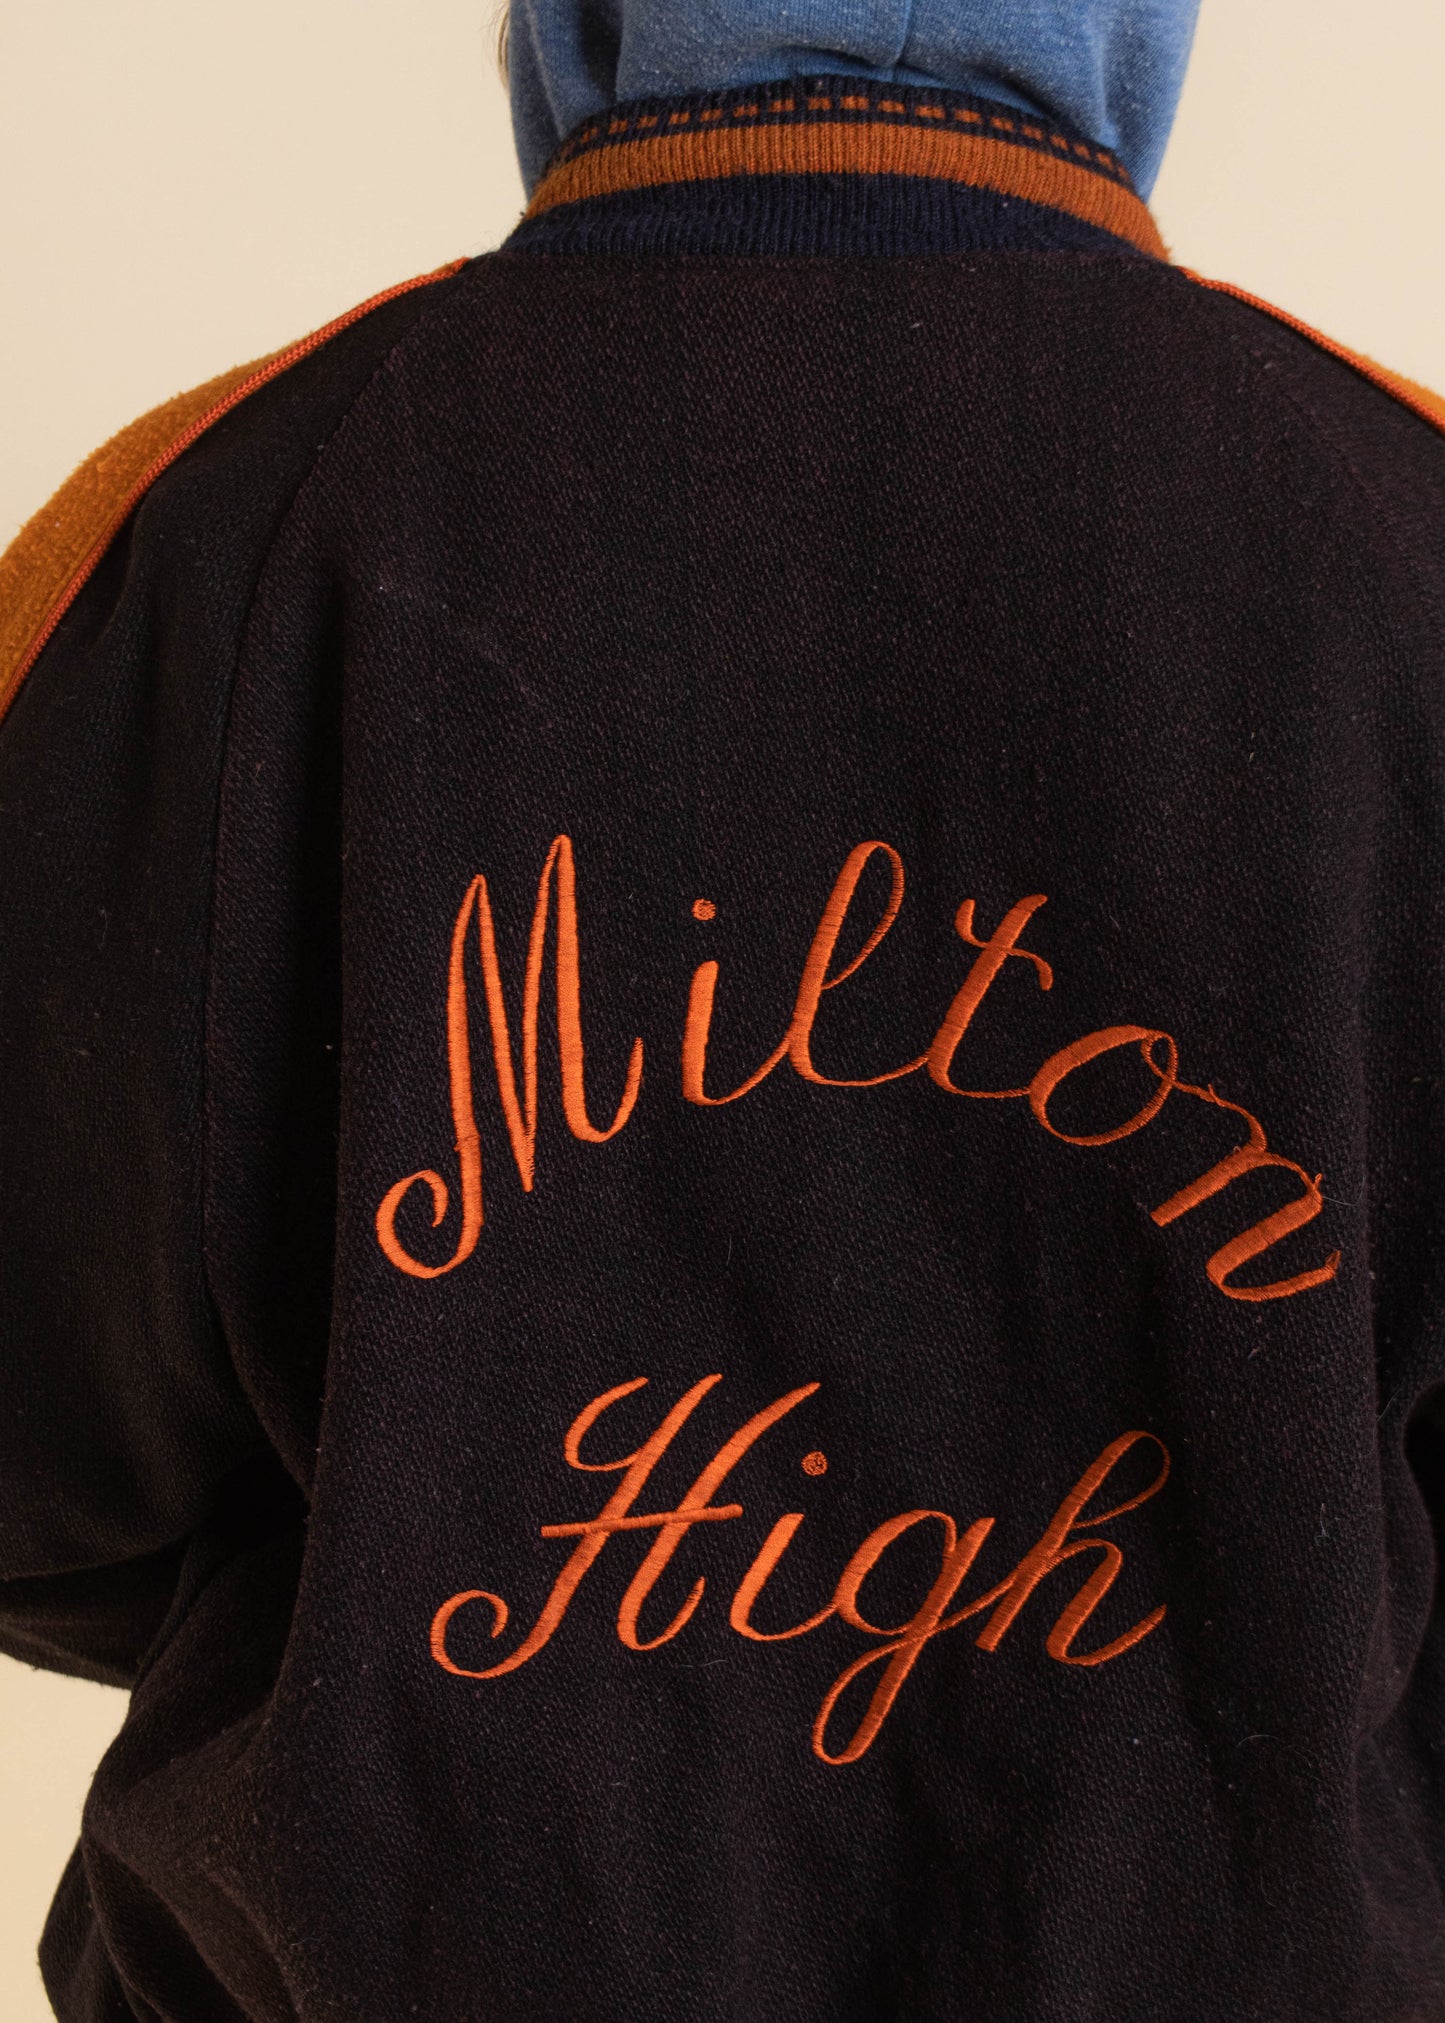 1970s Milton High Varsity Letterman Wool Jacket Size M/L